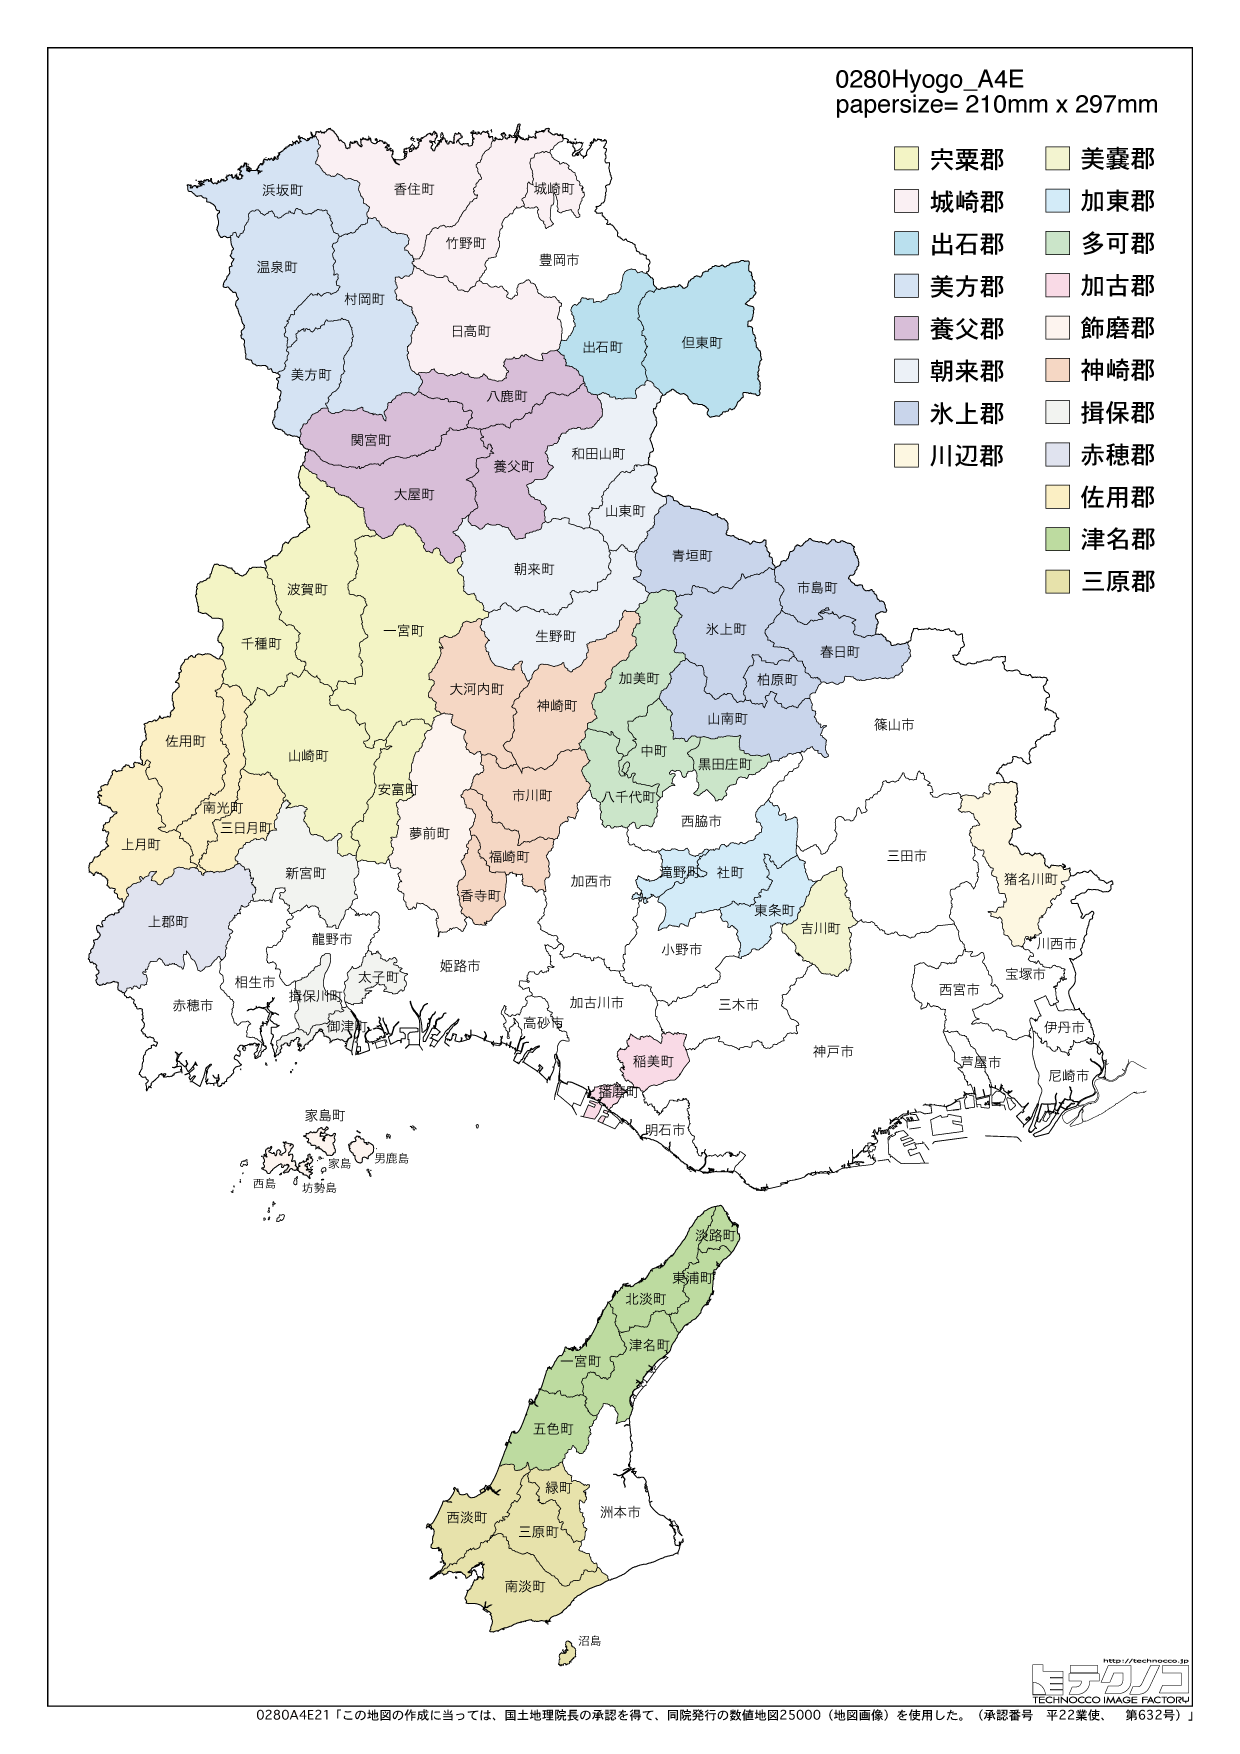 兵庫県の白地図と市町村の合併情報